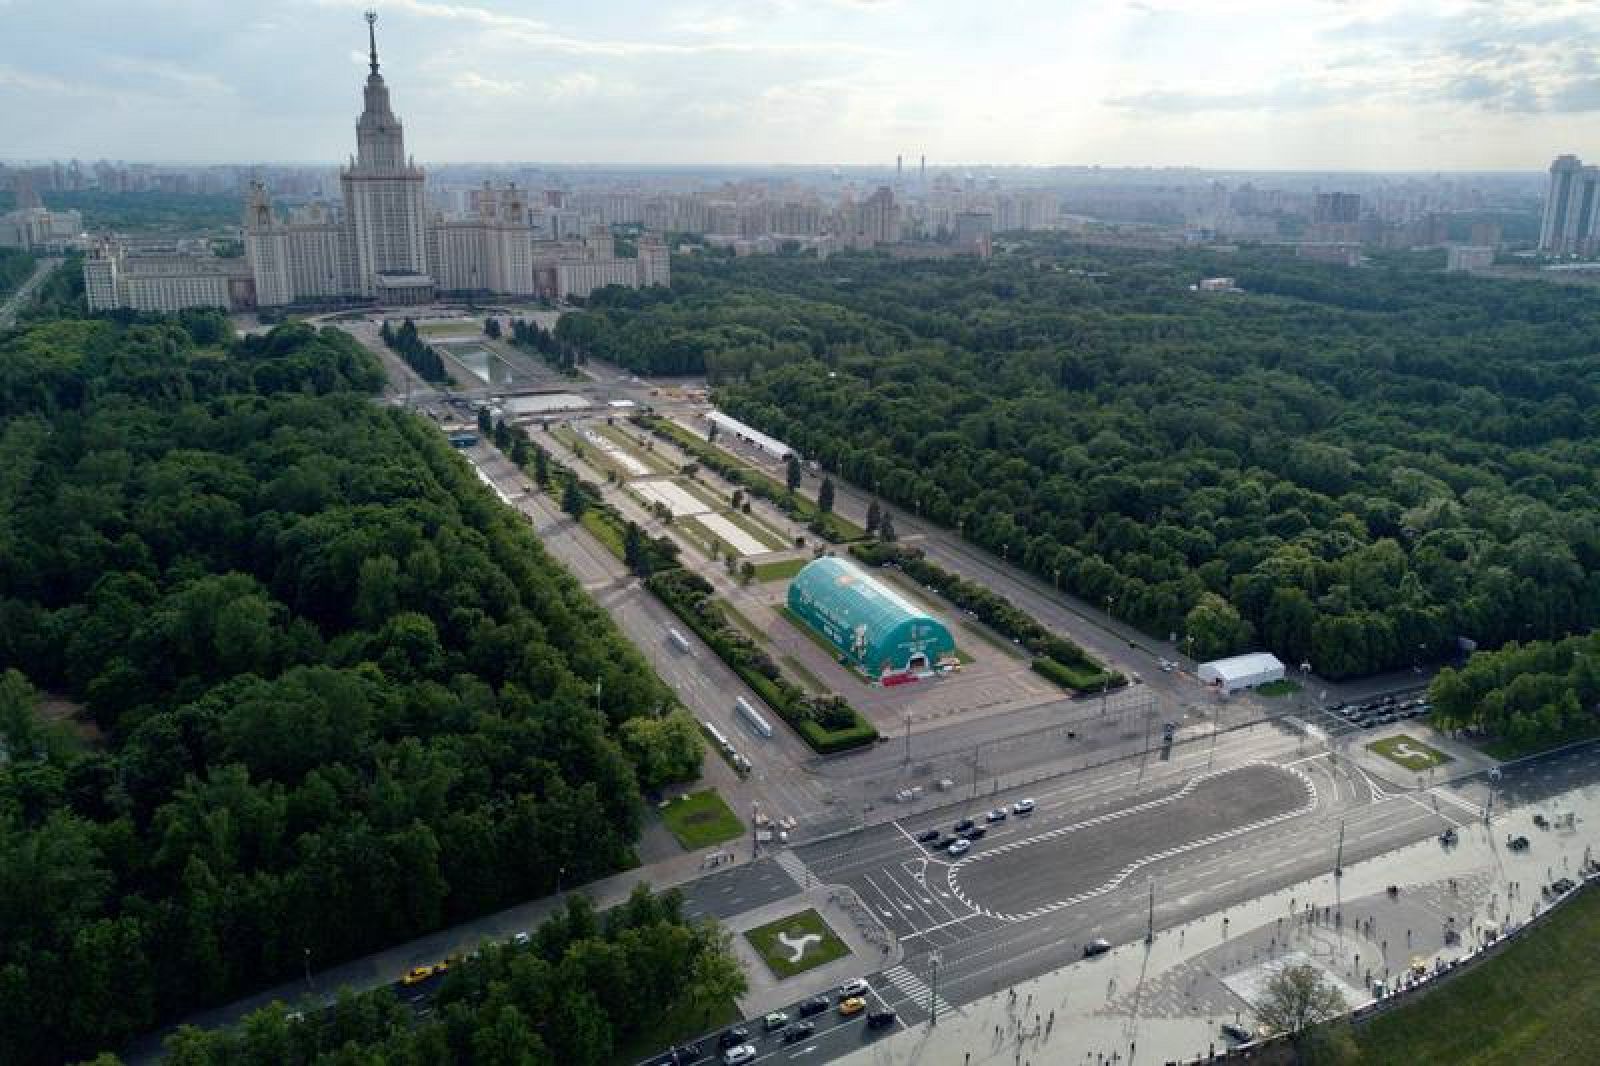 Vista aérea del campus de Moscú donde se está instalando una 'fan zone' para el Mundial , con el edificio principal de la Universidad Estatal al fondo.